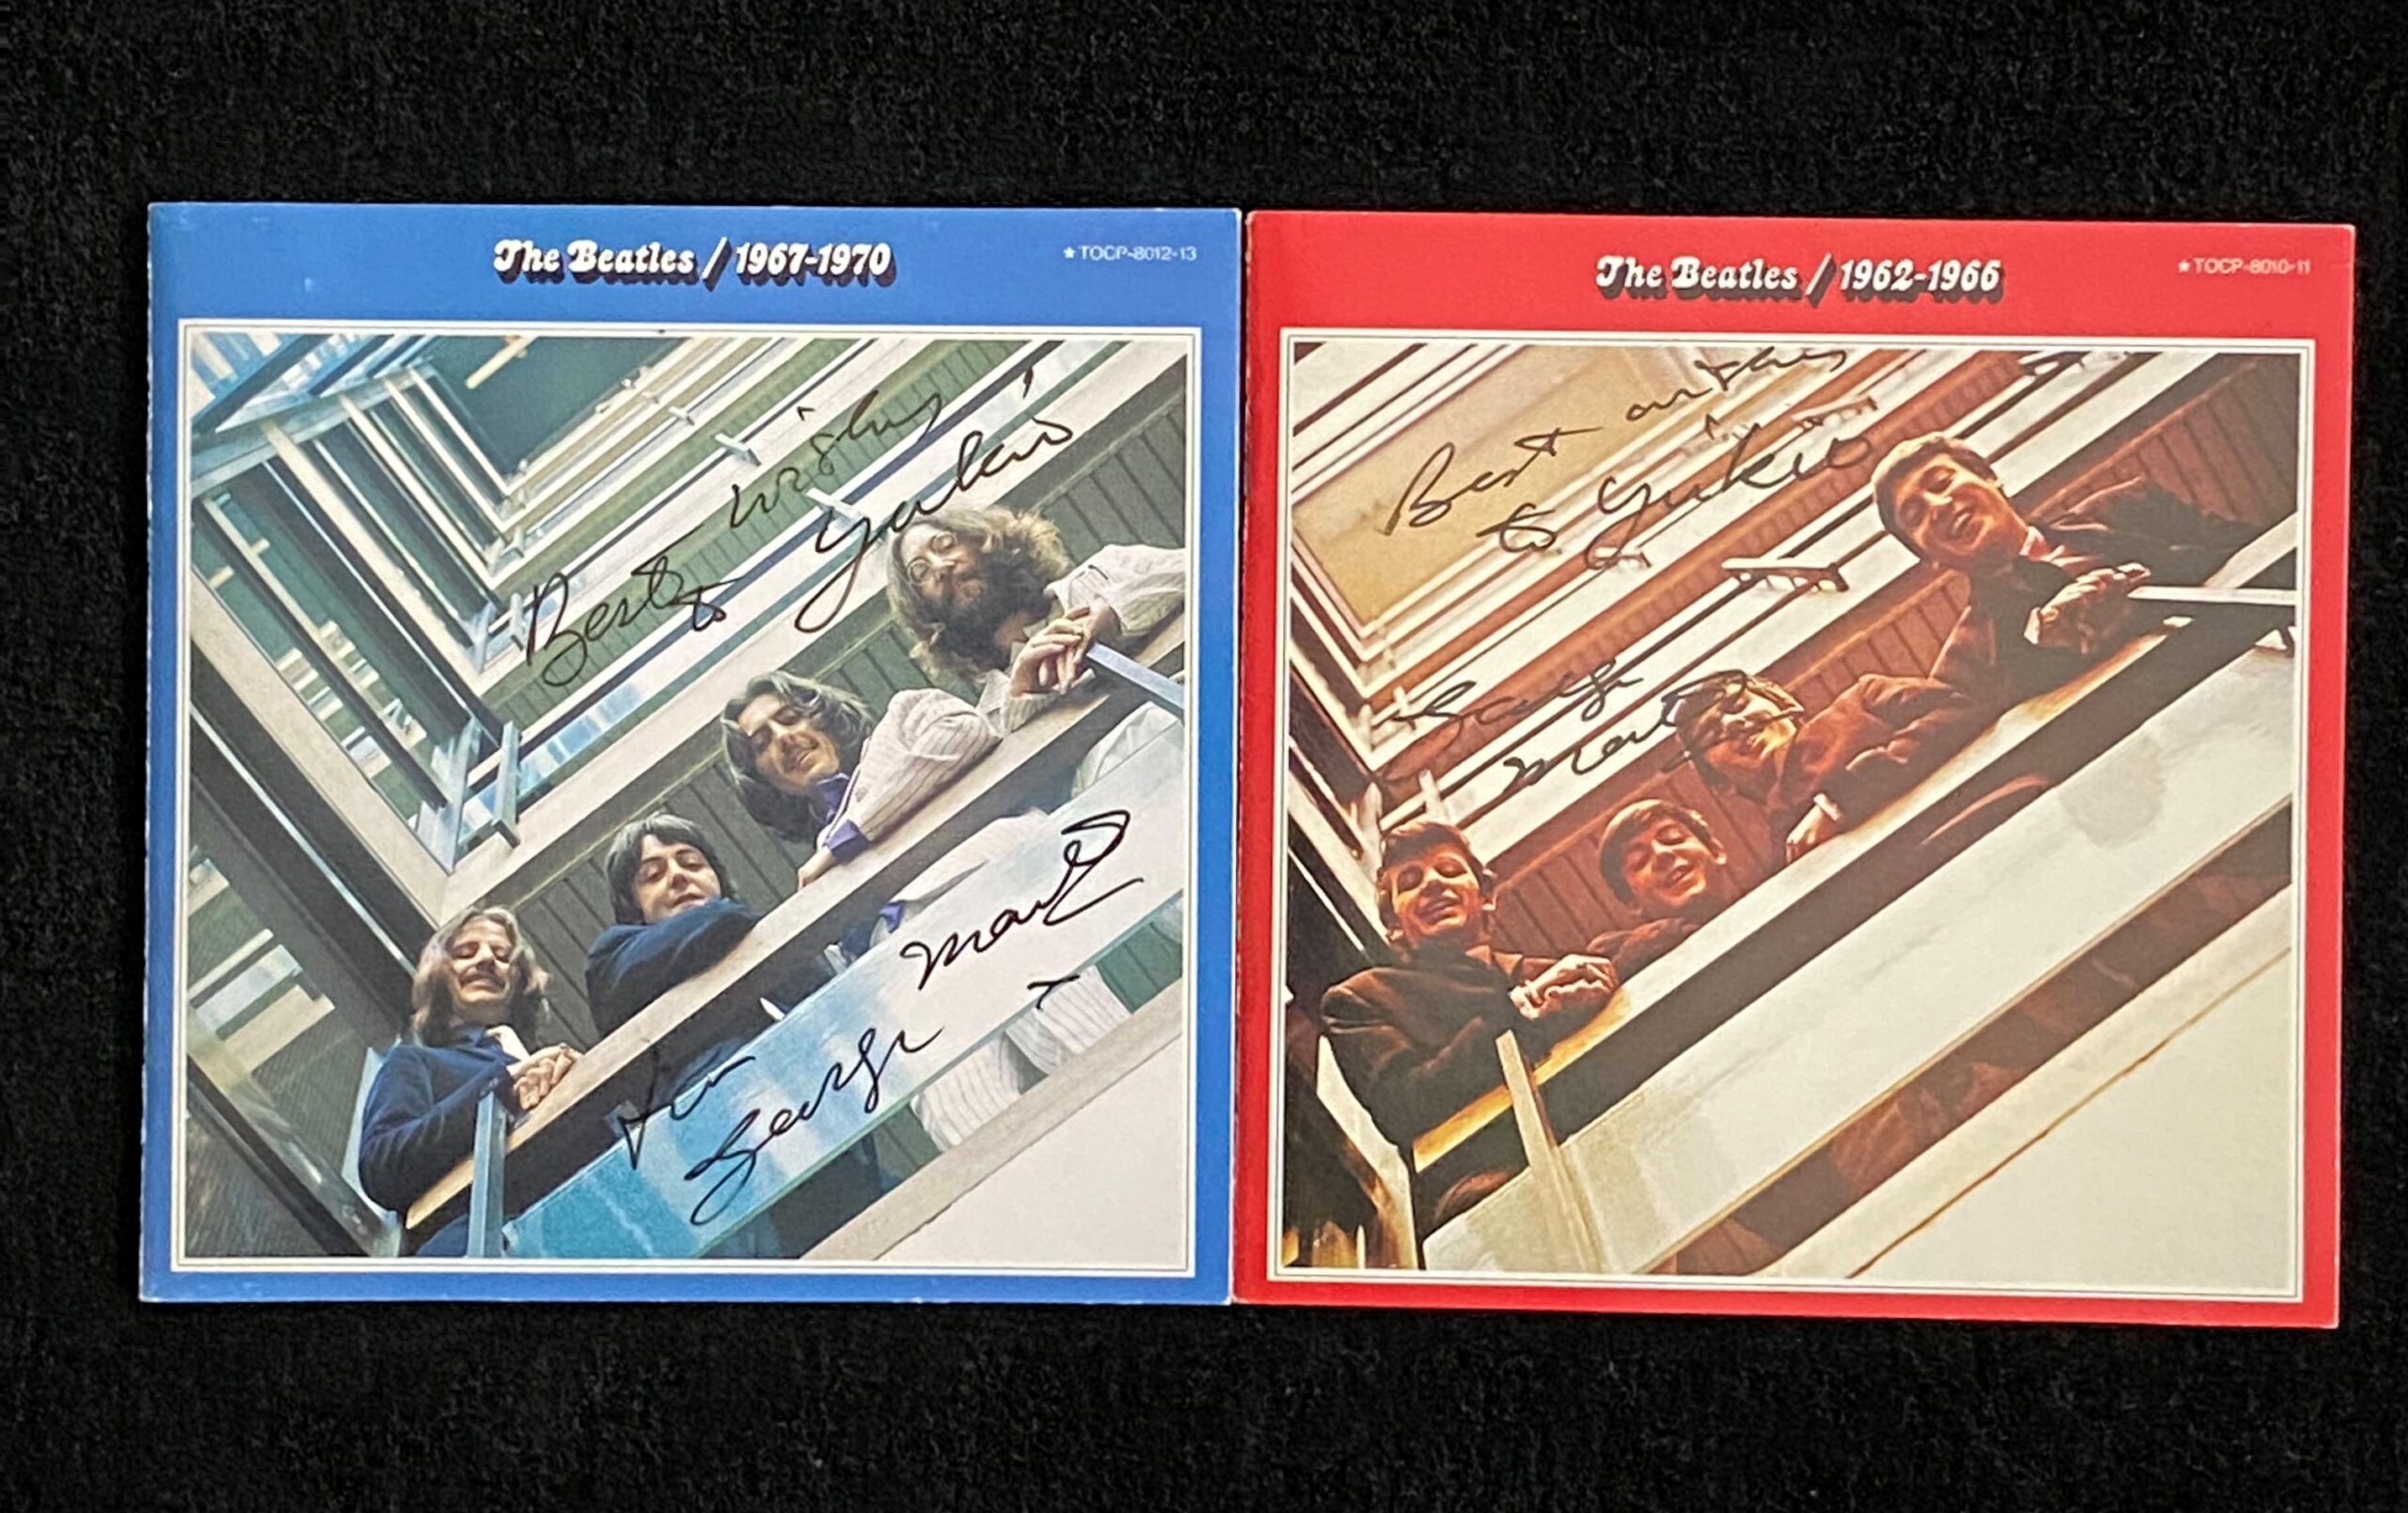 ベスト盤の『ザ・ビートルズ 1962年～1966年』(通称・赤盤)と、『ザ・ビートルズ 1967年～1970年』(通称・青盤)に書かれたジョージ・マーティンのサイン